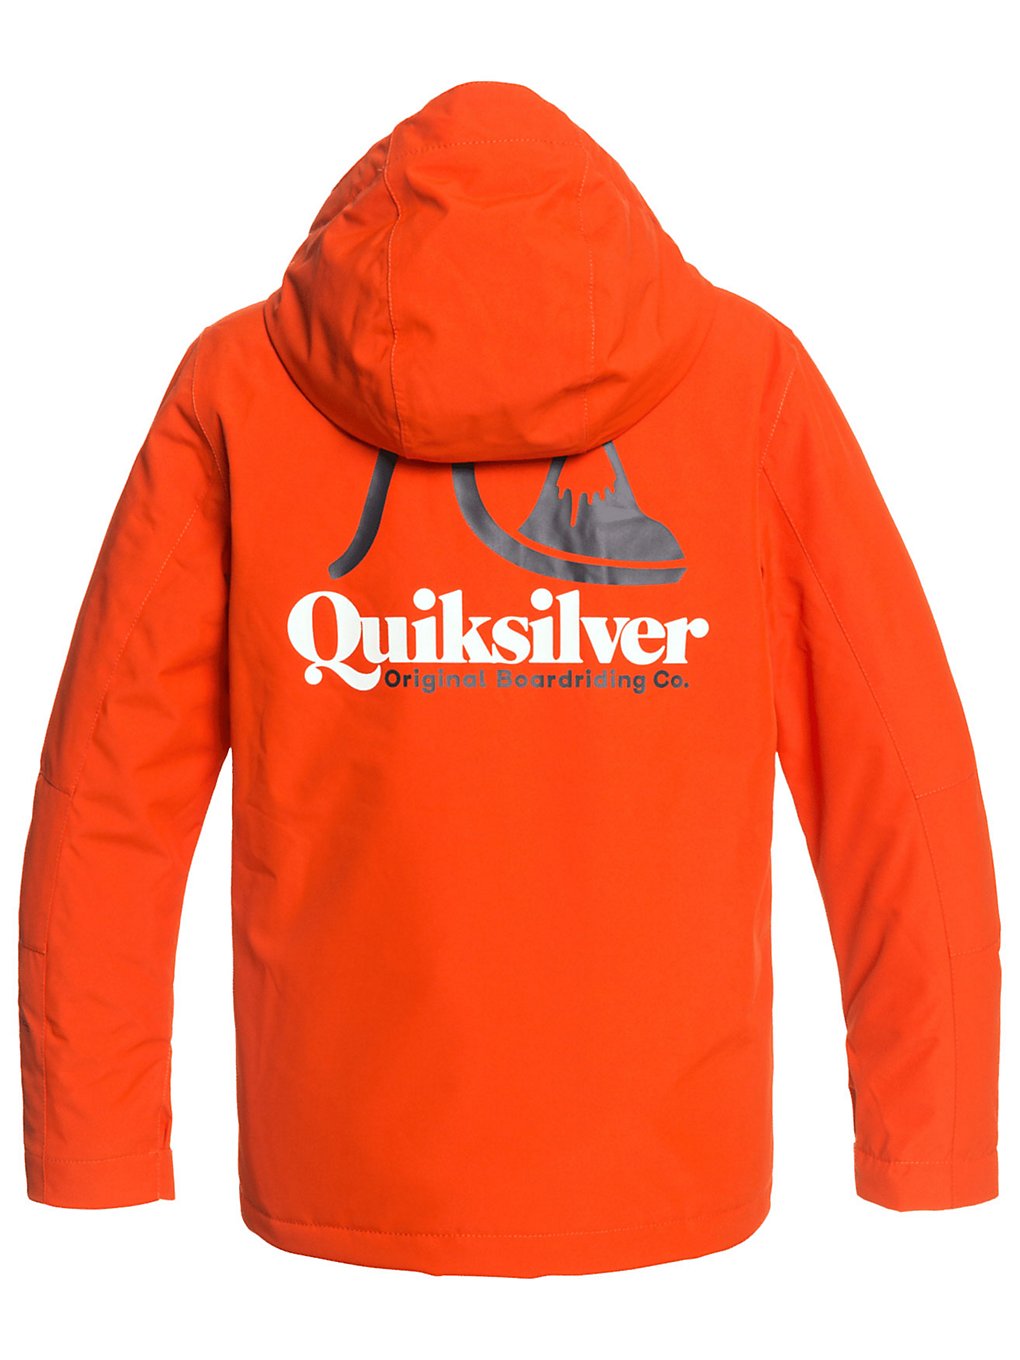 Quiksilver In The Hood Jacket pureed pumpkin